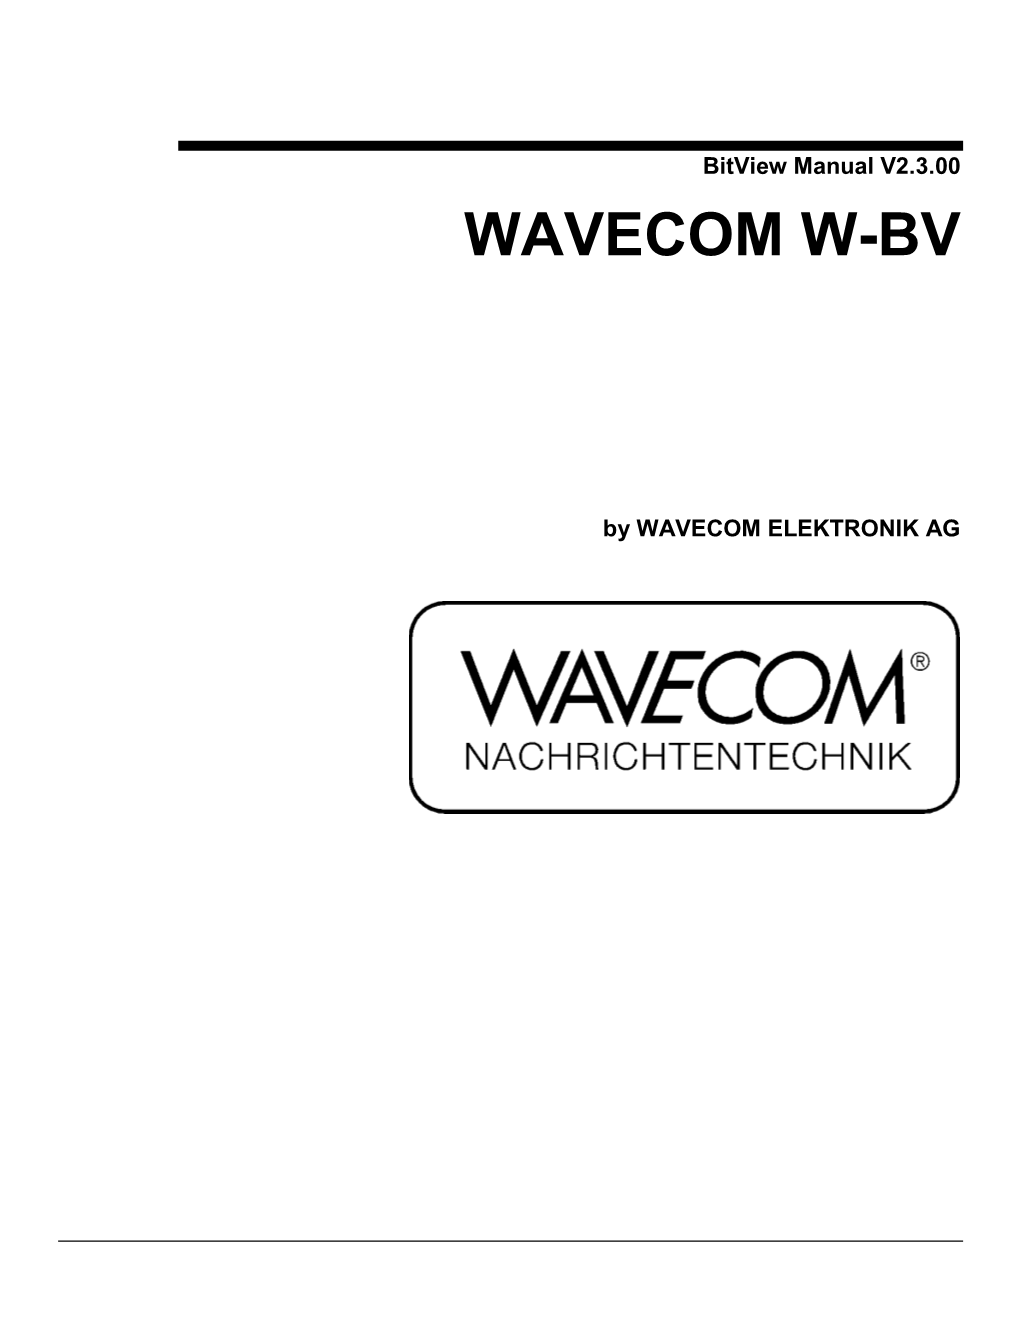 Bitview Manual V2.3.00 WAVECOM W-BV